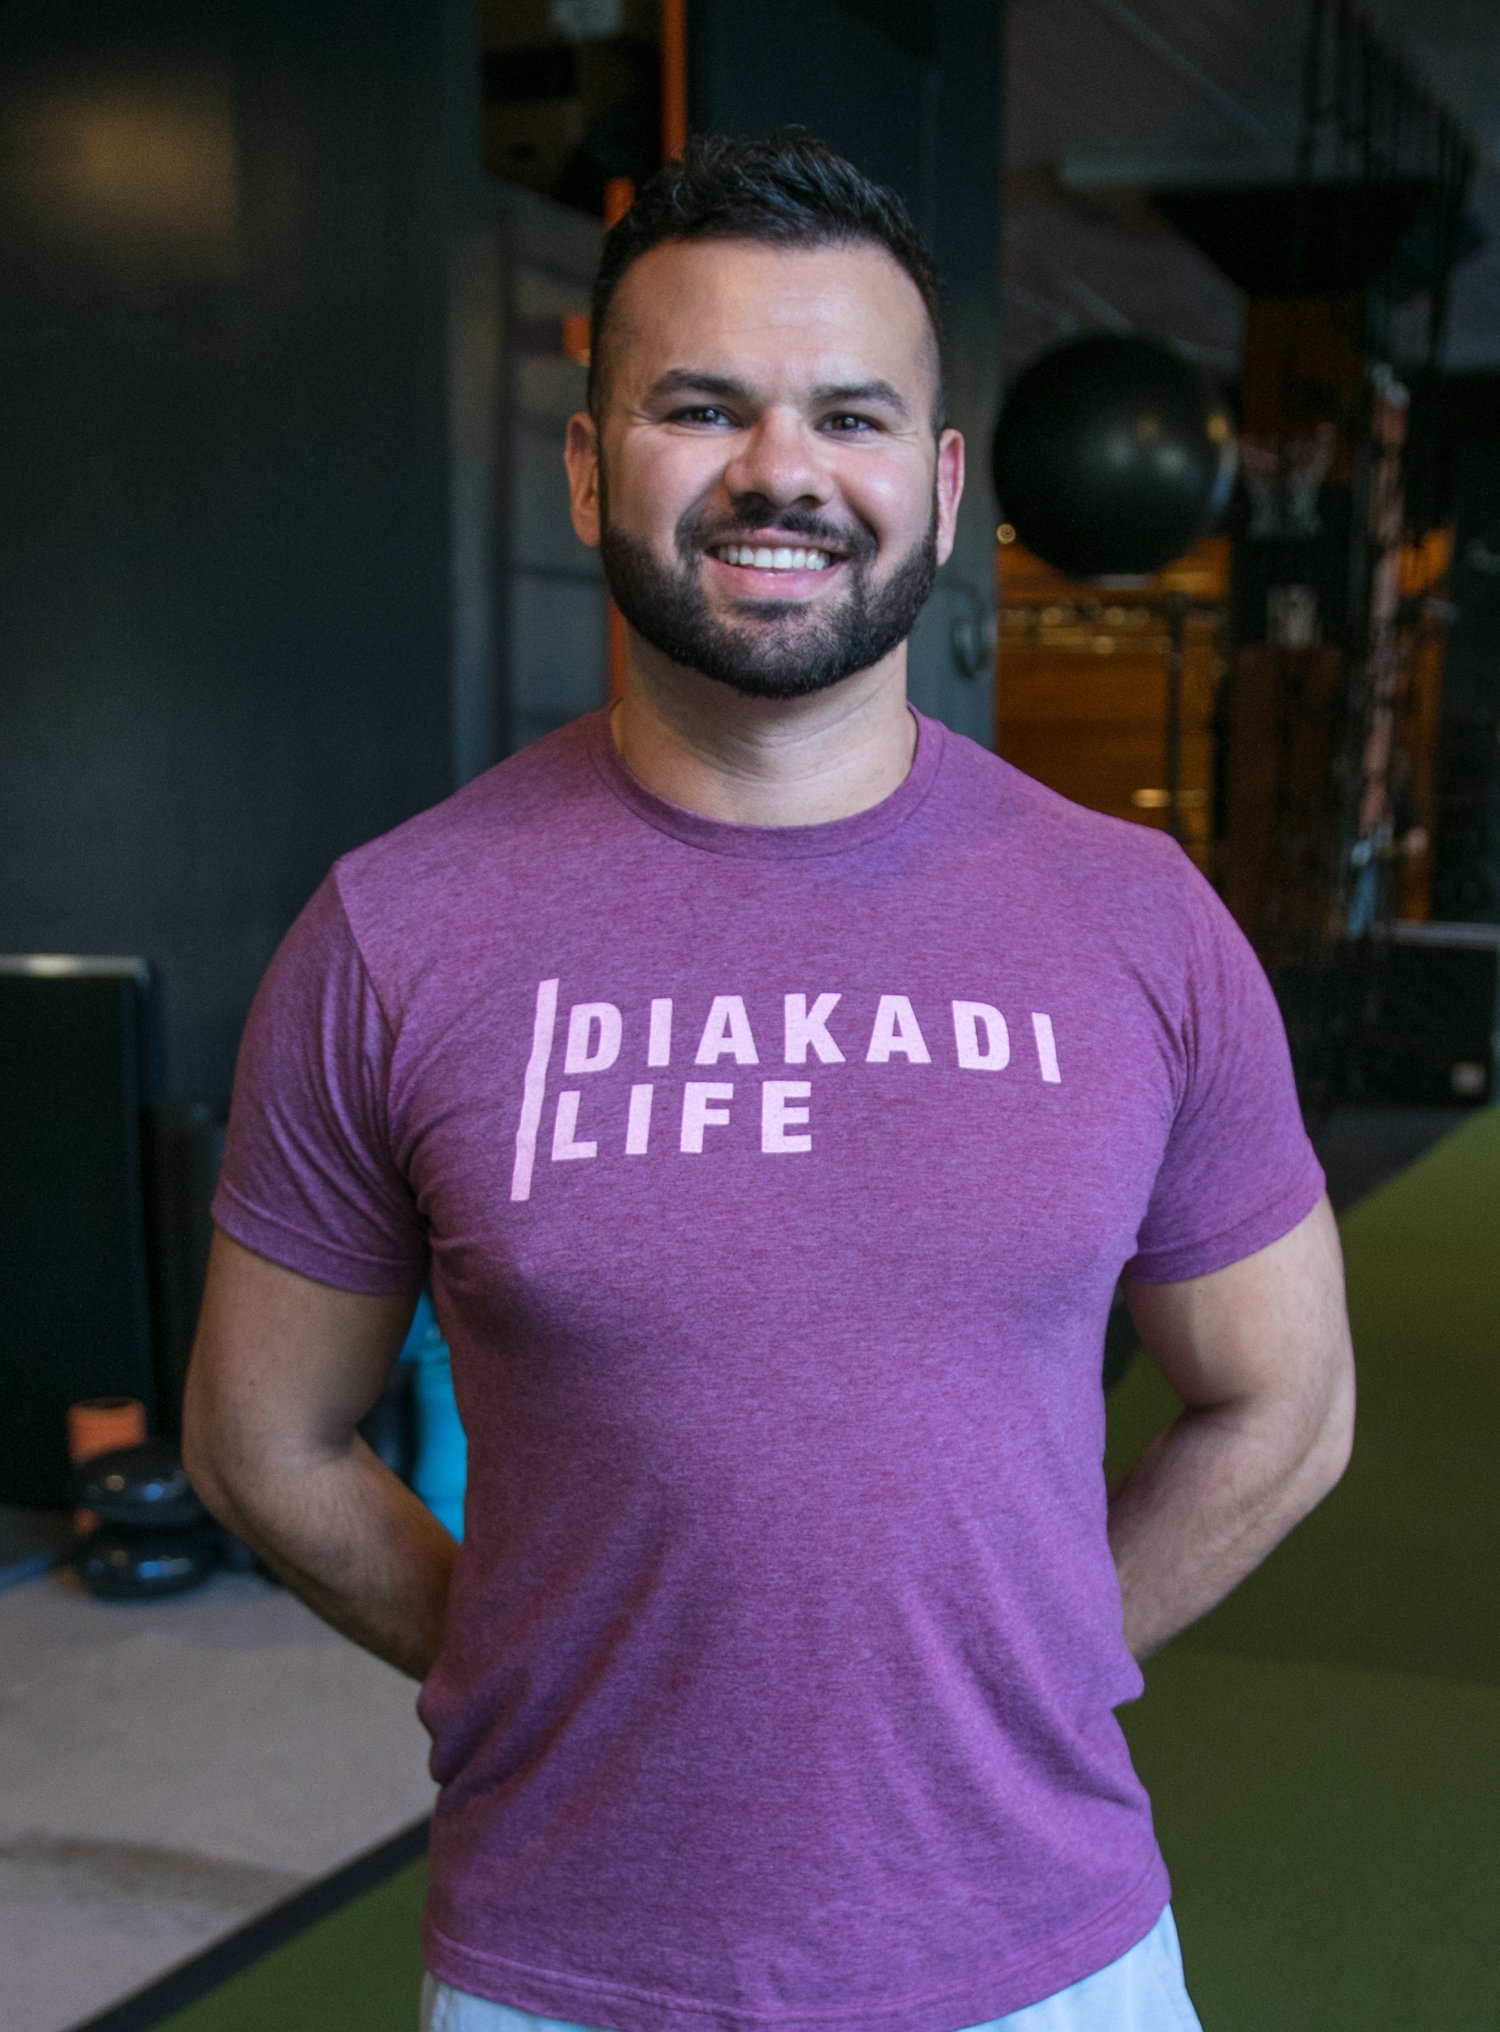 DIAKADI - Personal Training • DIAKADI Trainers